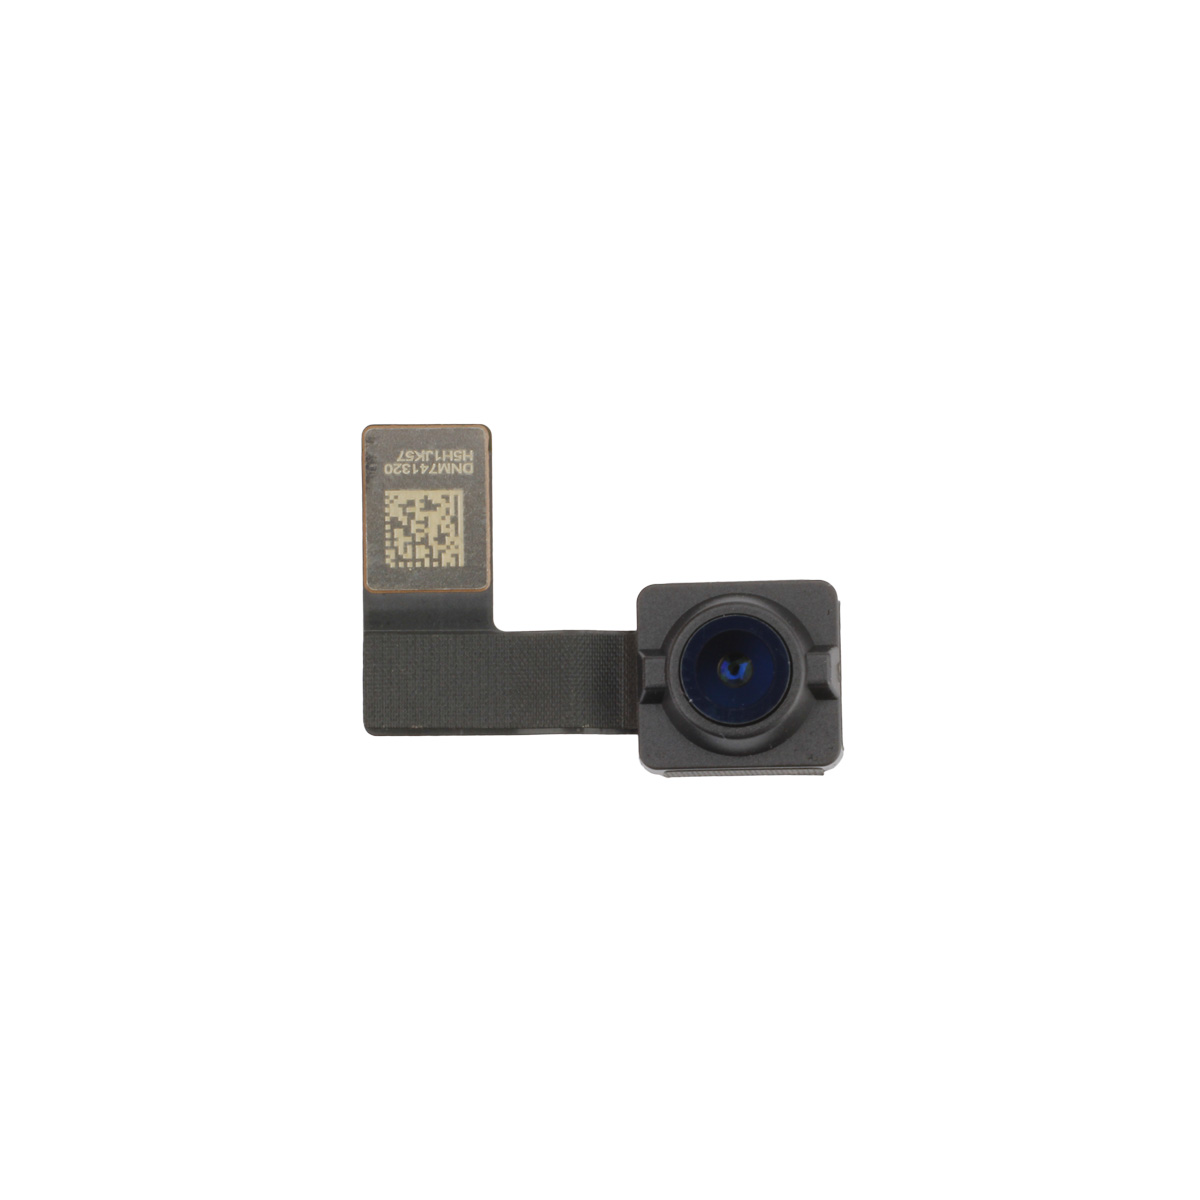 Frontkameramodul kompatibel mit iPad Pro 10,5 / iPad Air 3 (2019) / iPad mini 5